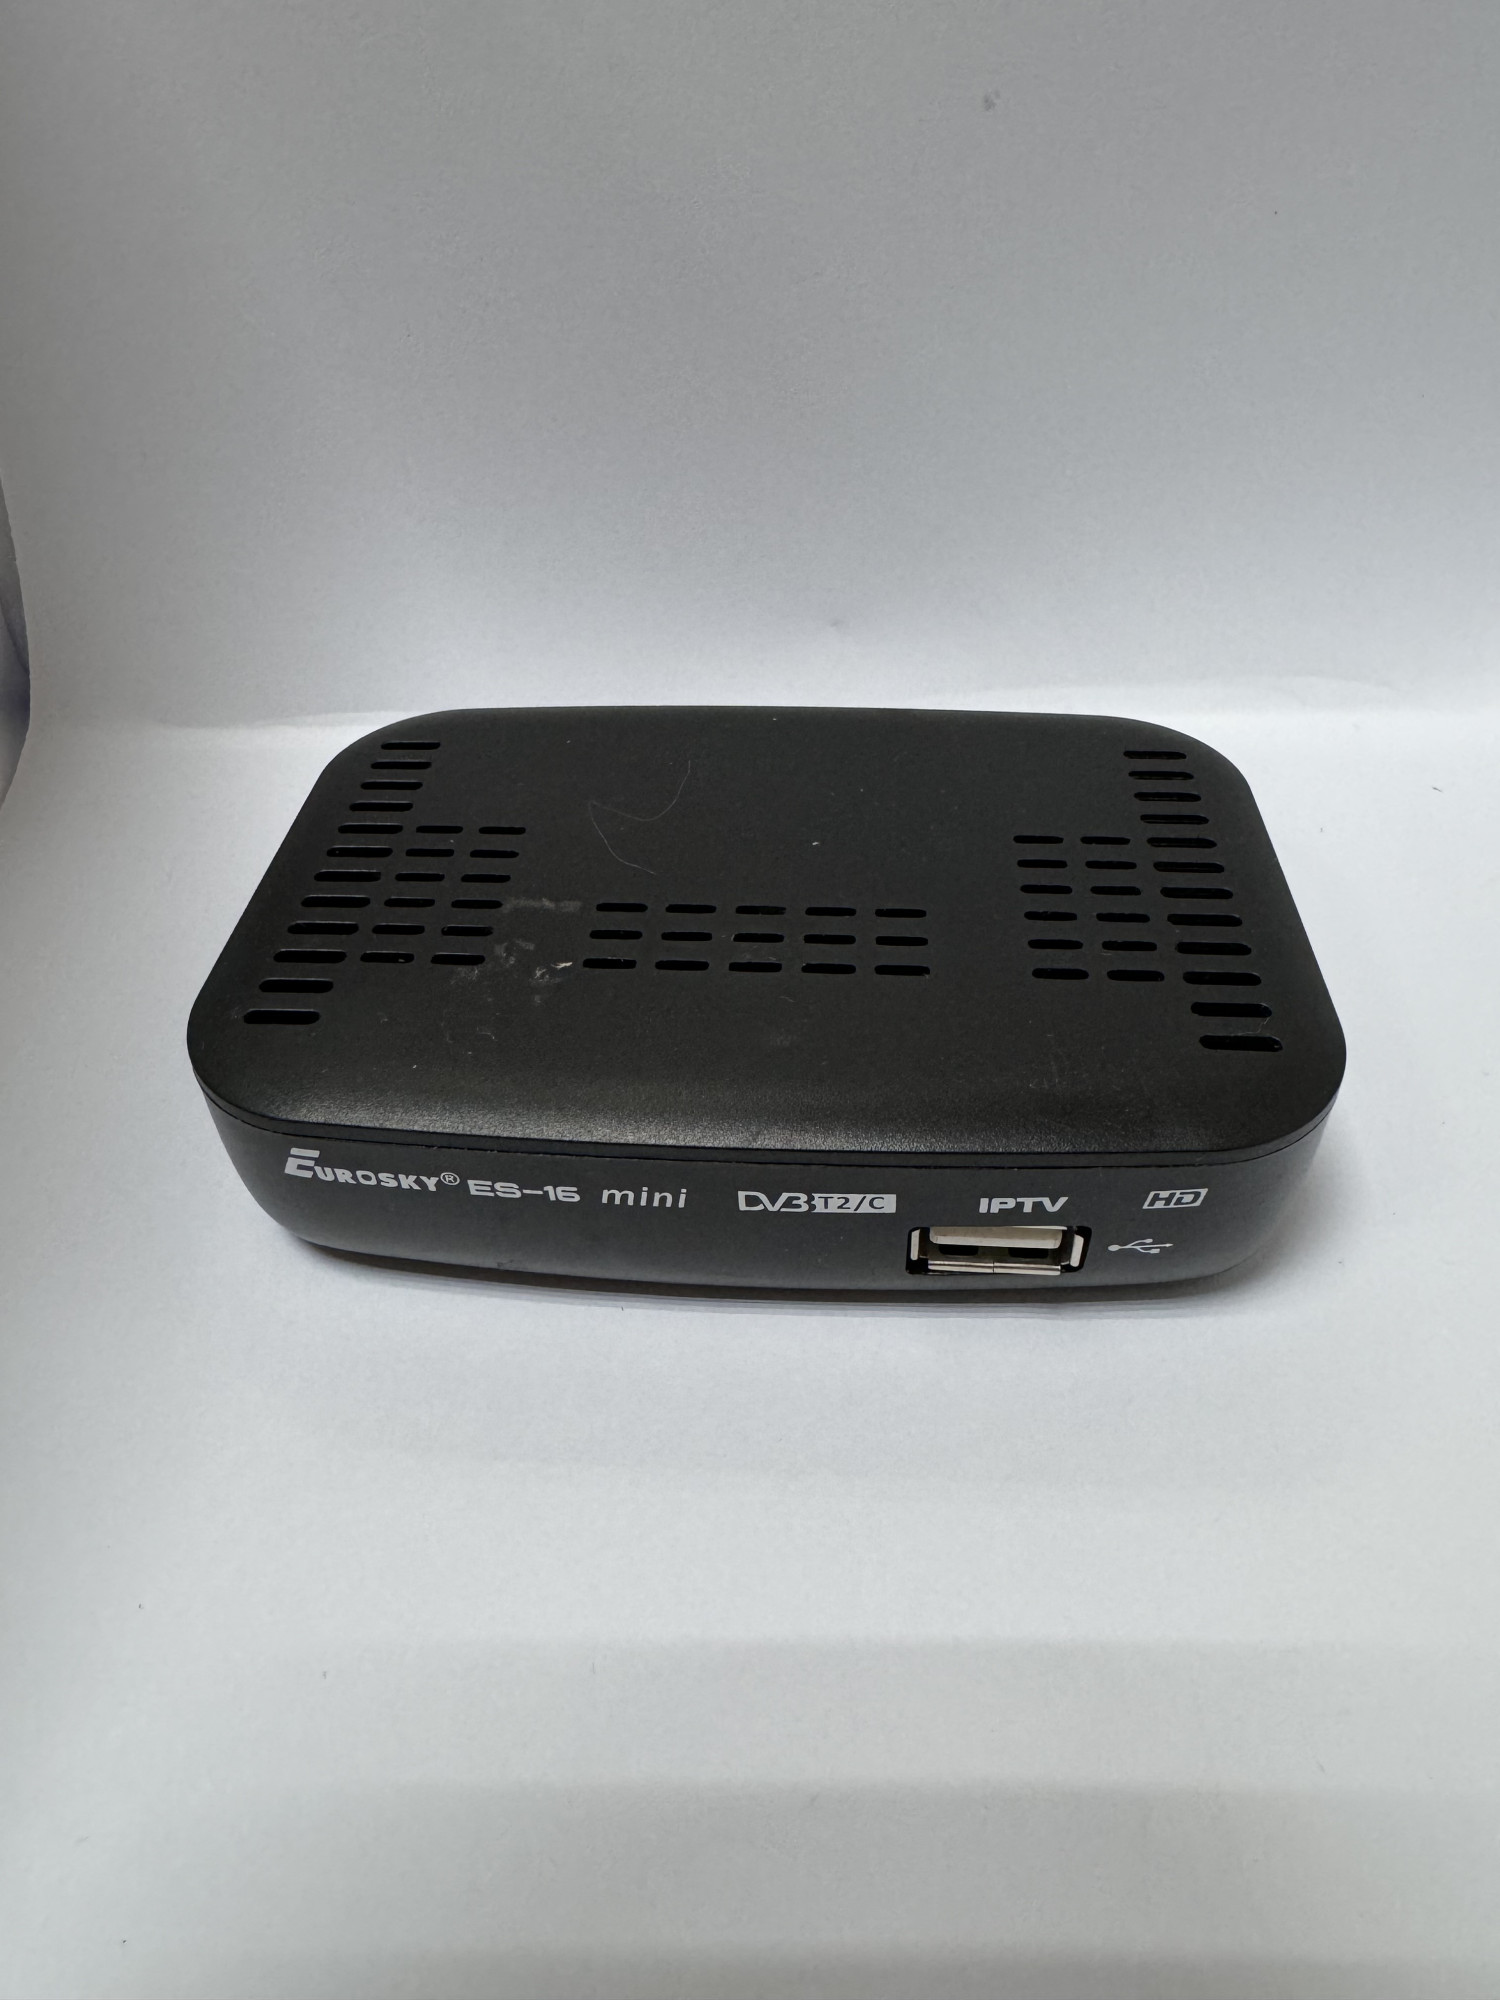 Цифровой эфирный ресивер Eurosky ES-16 Mini DVB-T2 0